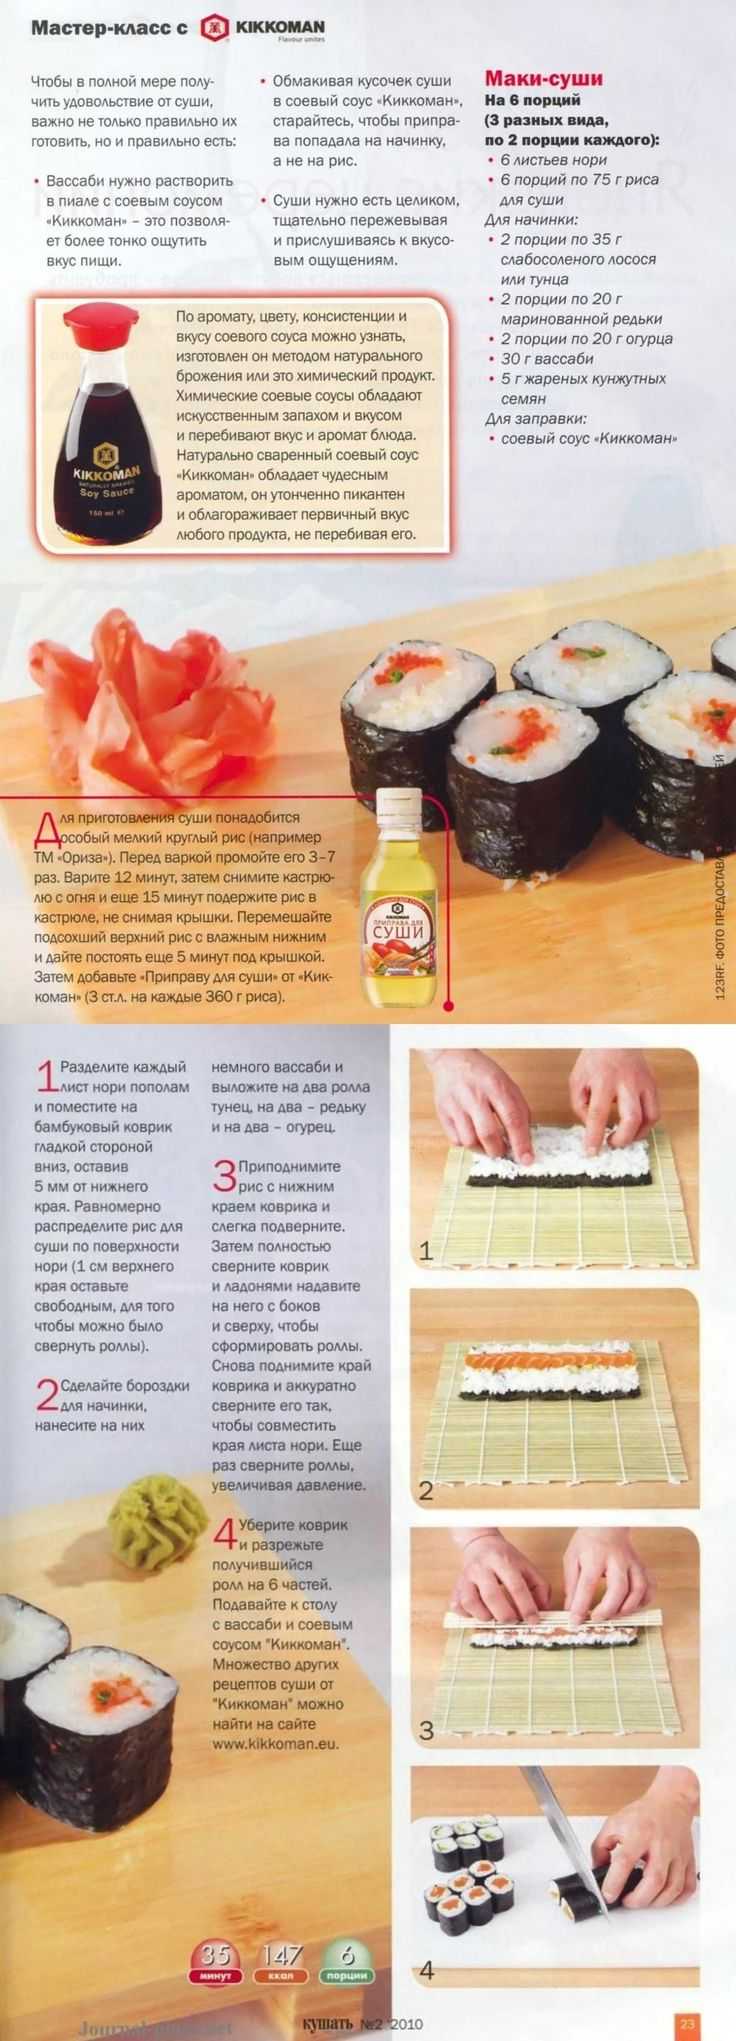 Рецепт запеченных роллов суши фото 53